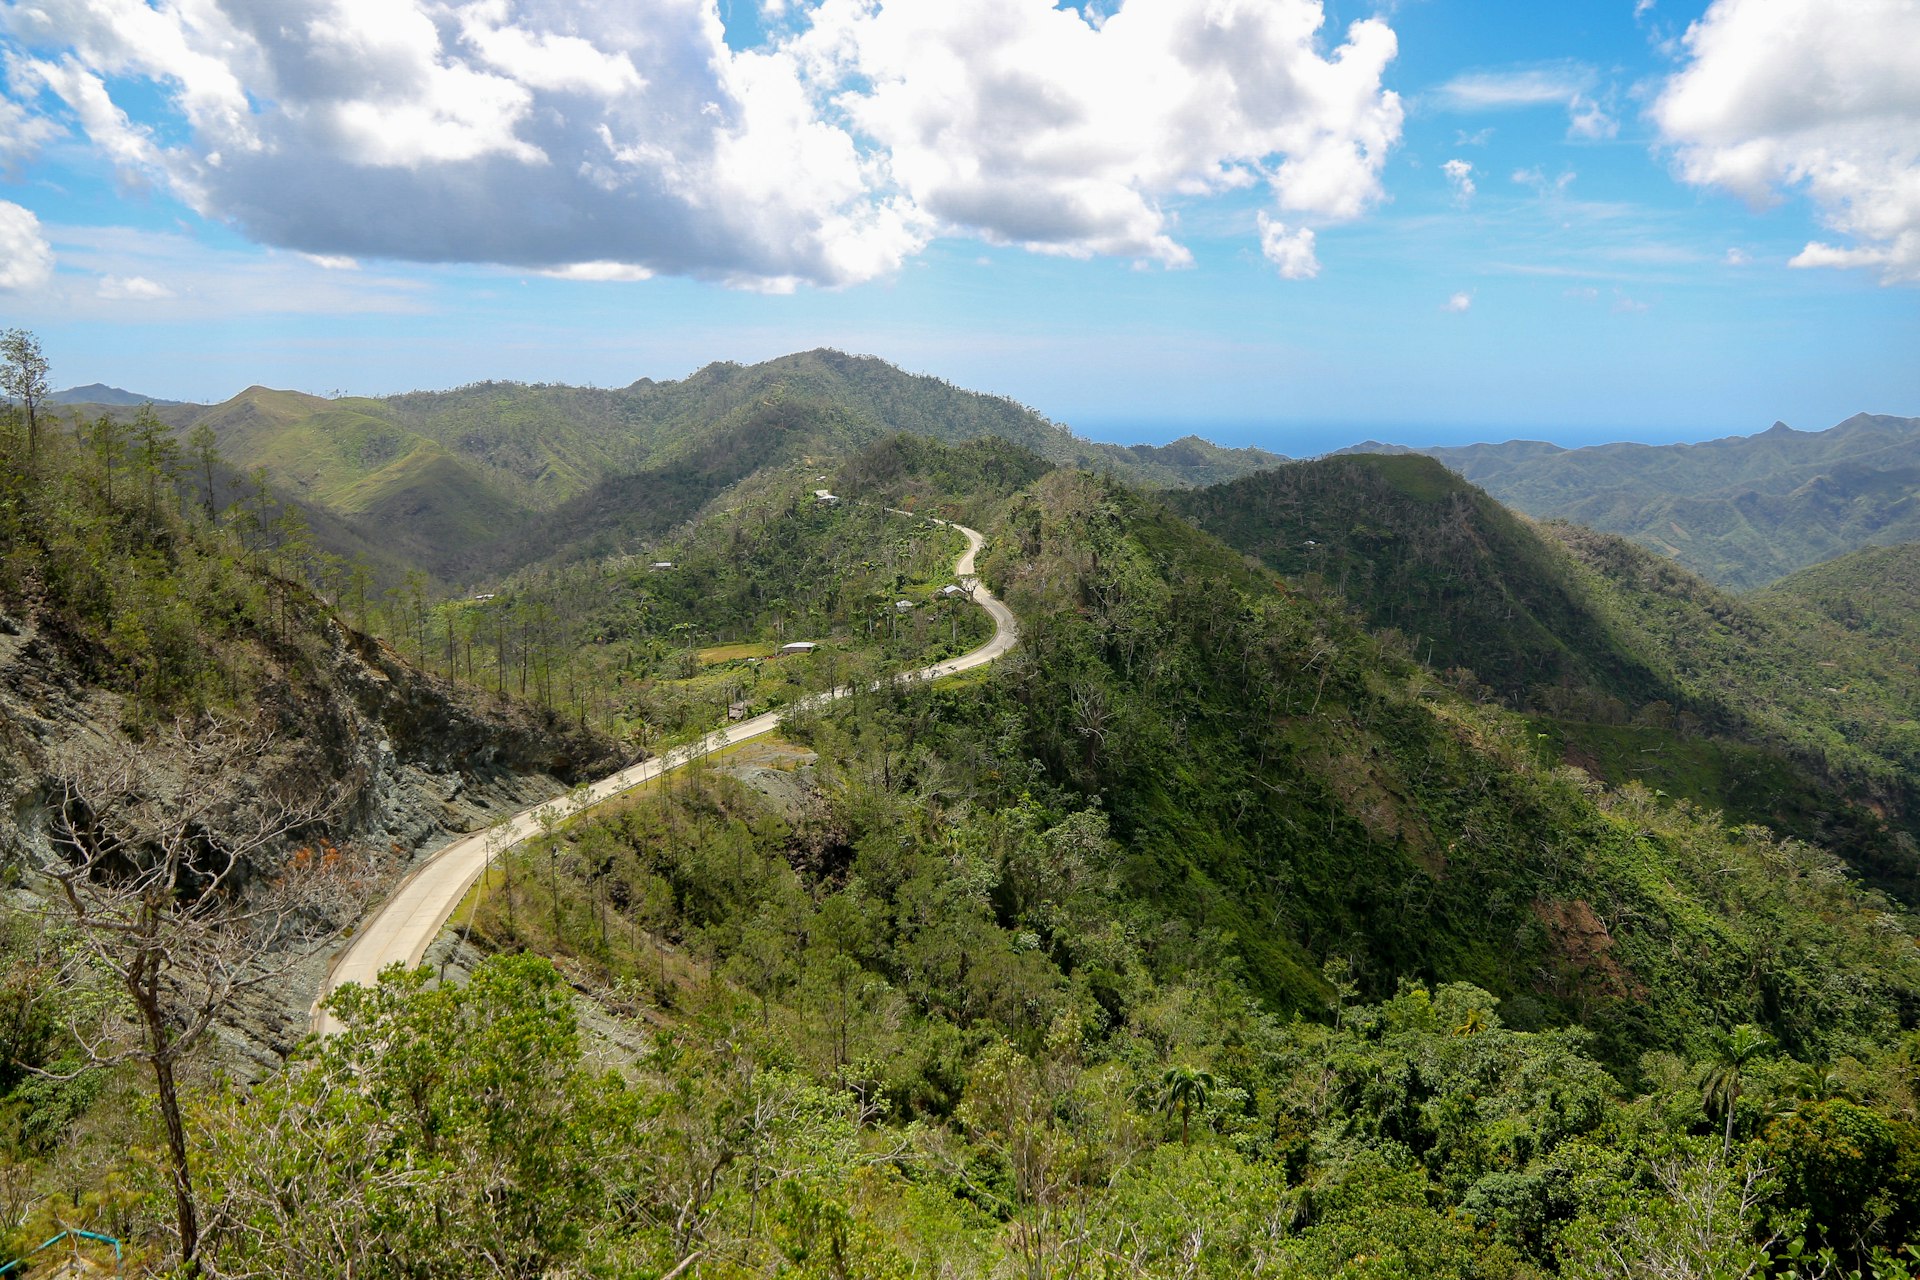 The winding La Farola road along a mountain ridge in the Sierra Maestra mountains, Cuba